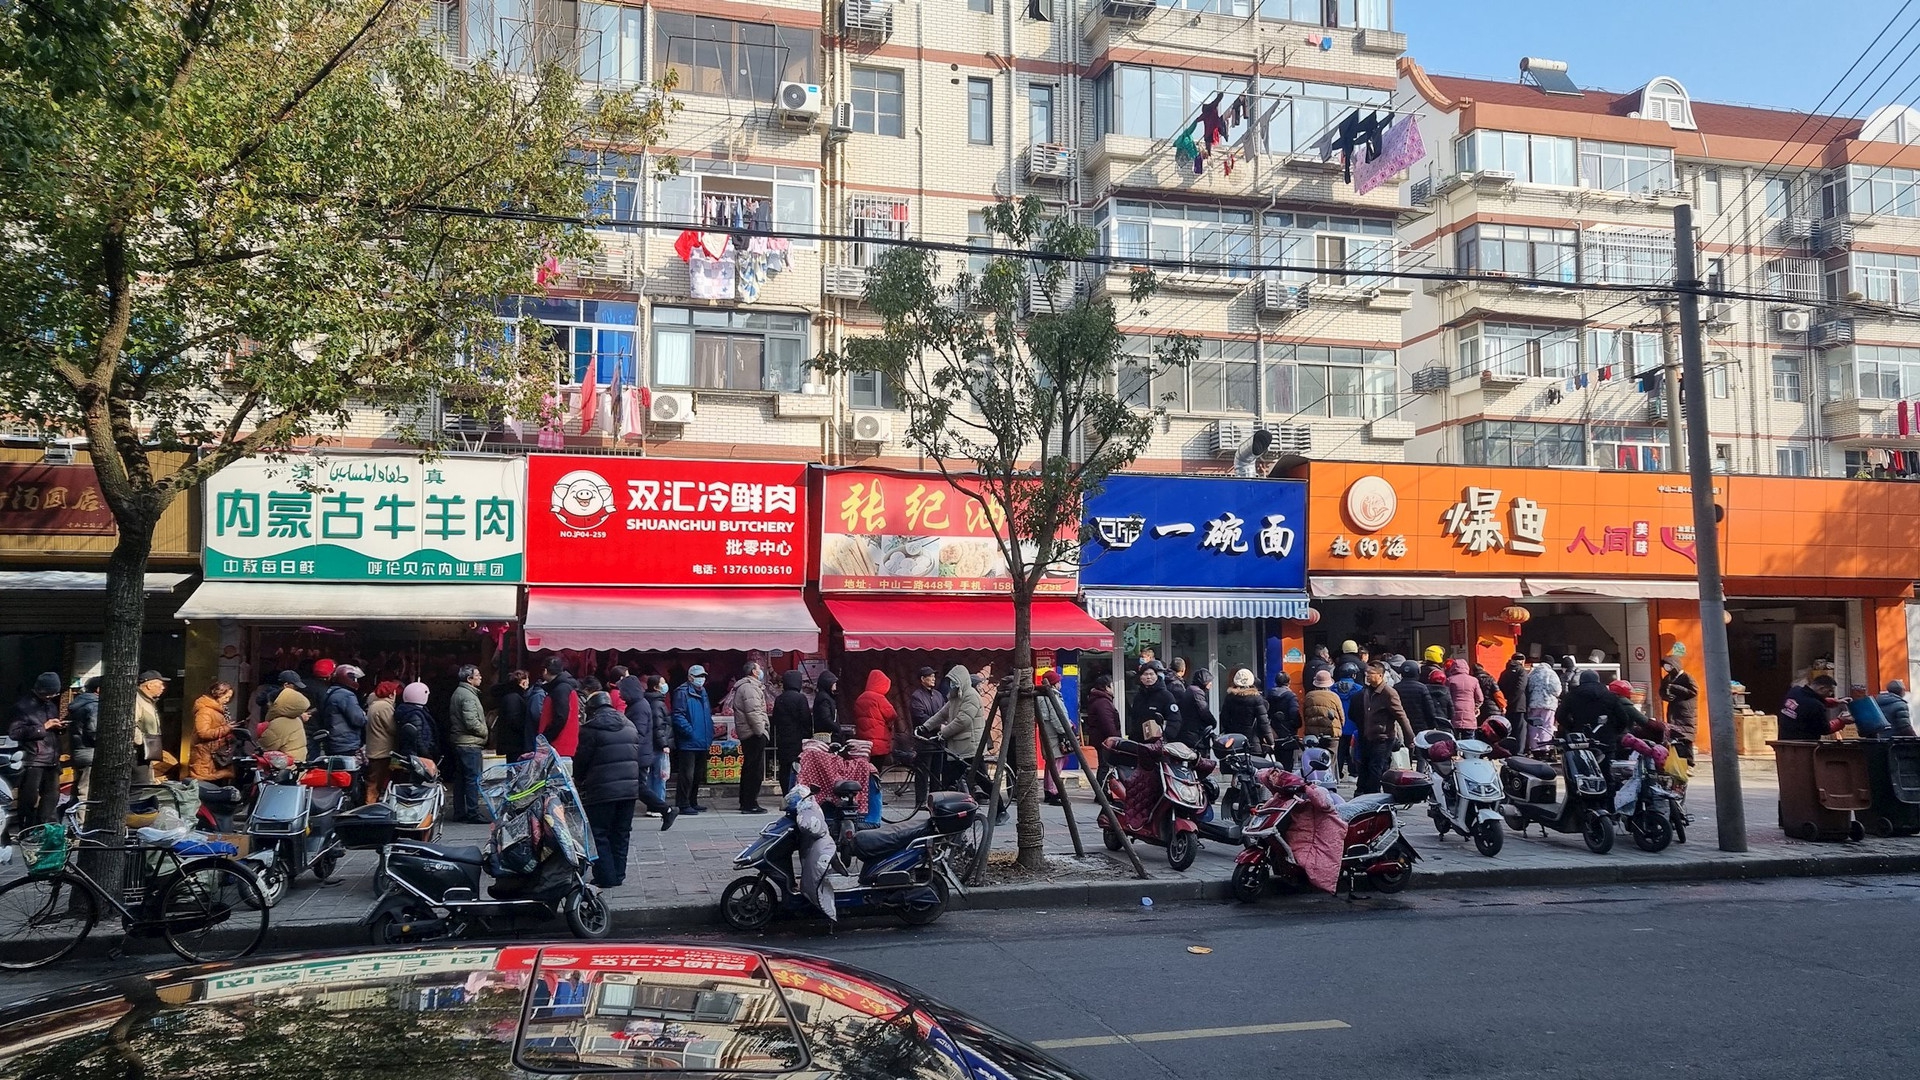 Du học sinh Việt trải nghiệm đi siêu thị ngày 29 Tết tại Trung Quốc: Bất ngờ sản phẩm “cháy hàng” nhanh nhất không phải là hoa quả, kẹo bánh- Ảnh 4.